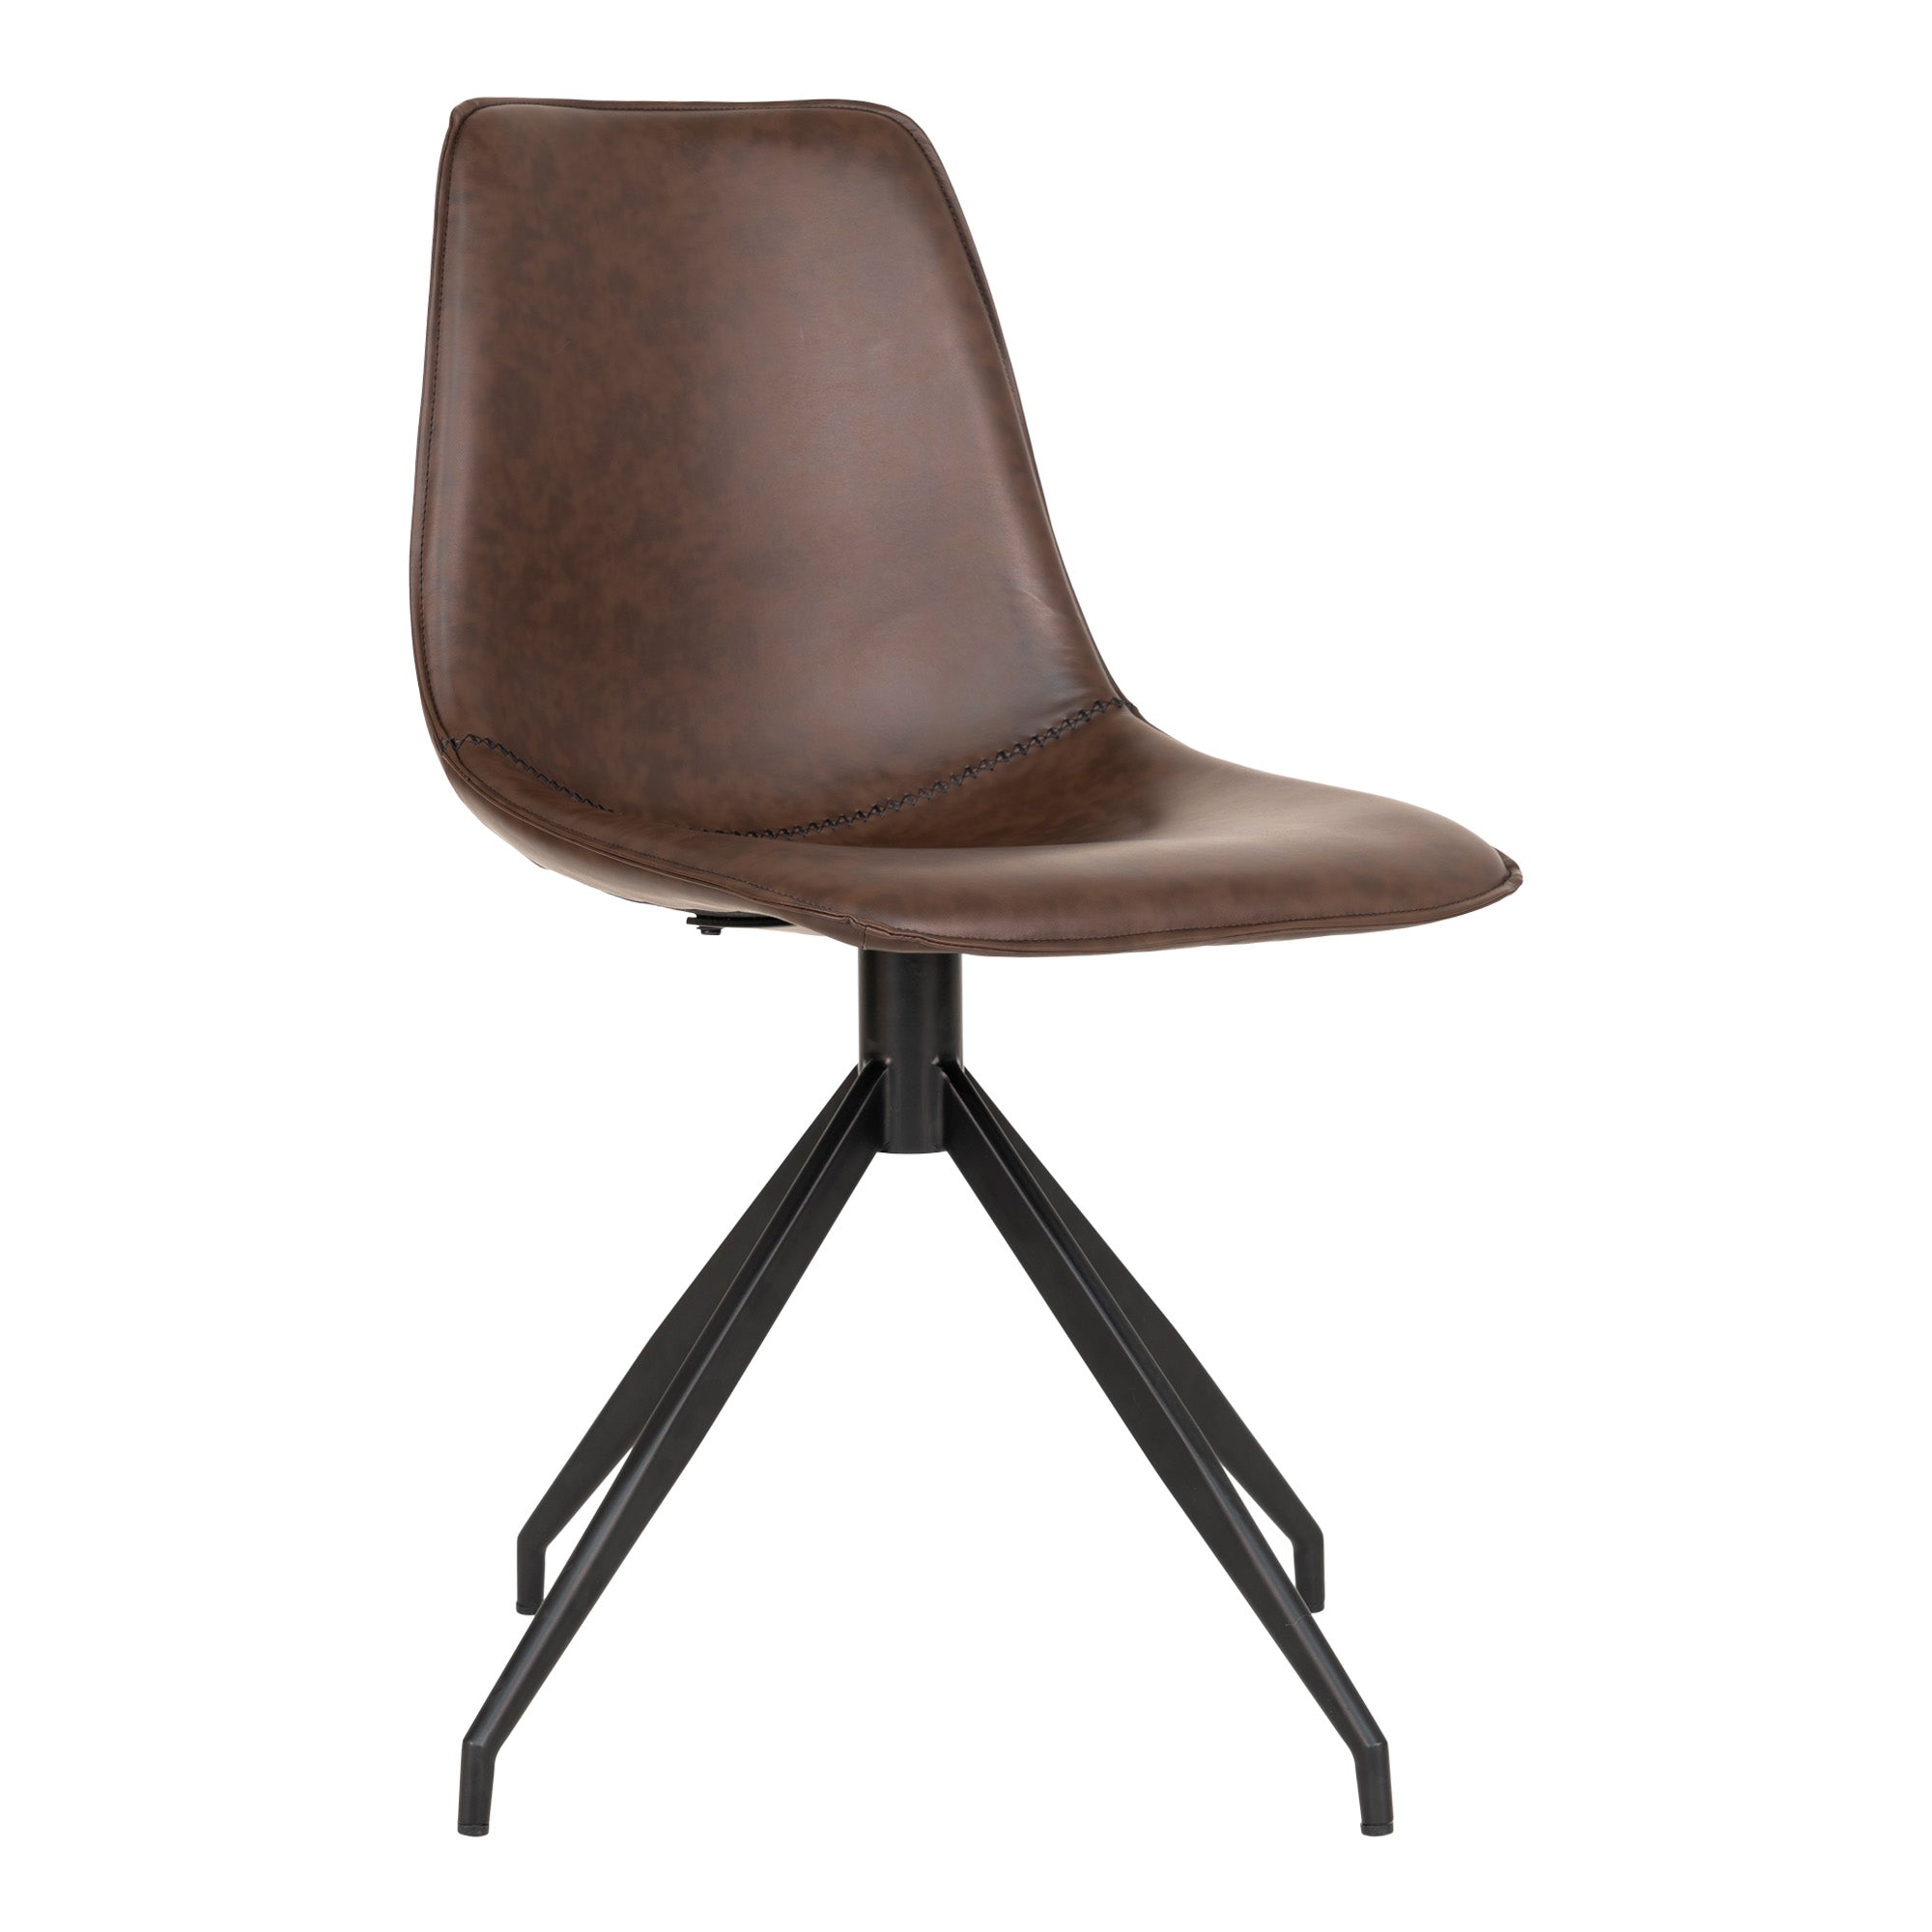 Billede af Monaco Spisebordsstol - Spisebordsstol I Pu Med Drejefod, Mørkebrun Med Sorte Ben, Hn1227 Sæt af 2 stk.